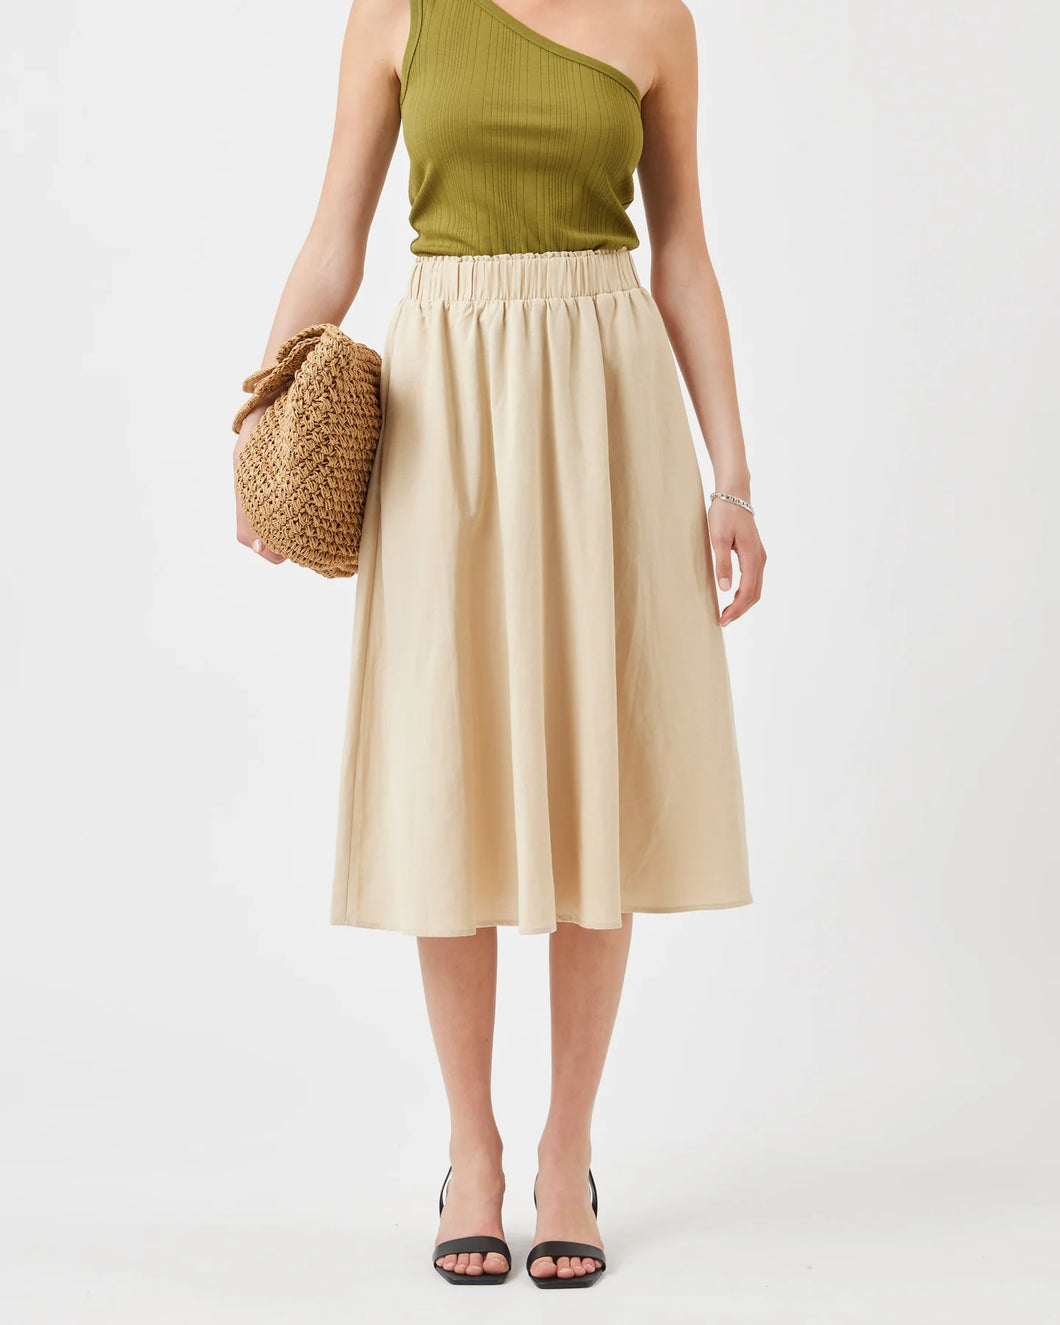 The Lovely Linen-Blend Full Skirt